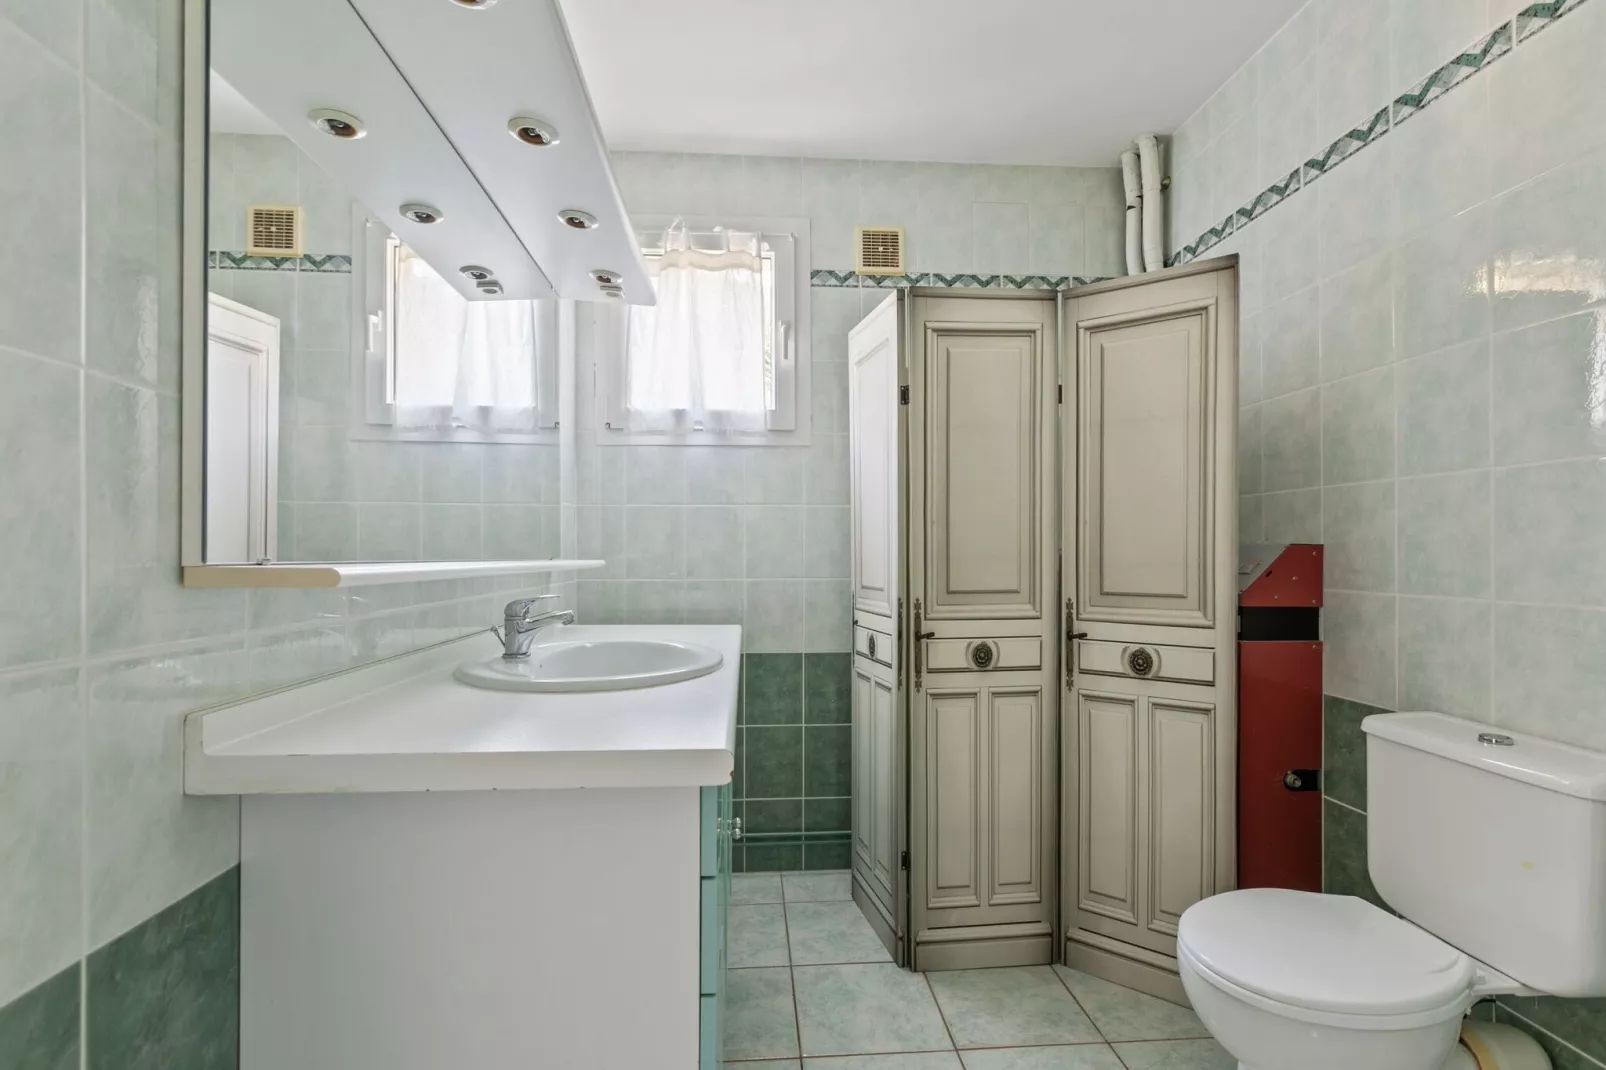 Huis in Zuid-Frankrijk met privé zwembad-Badkamer